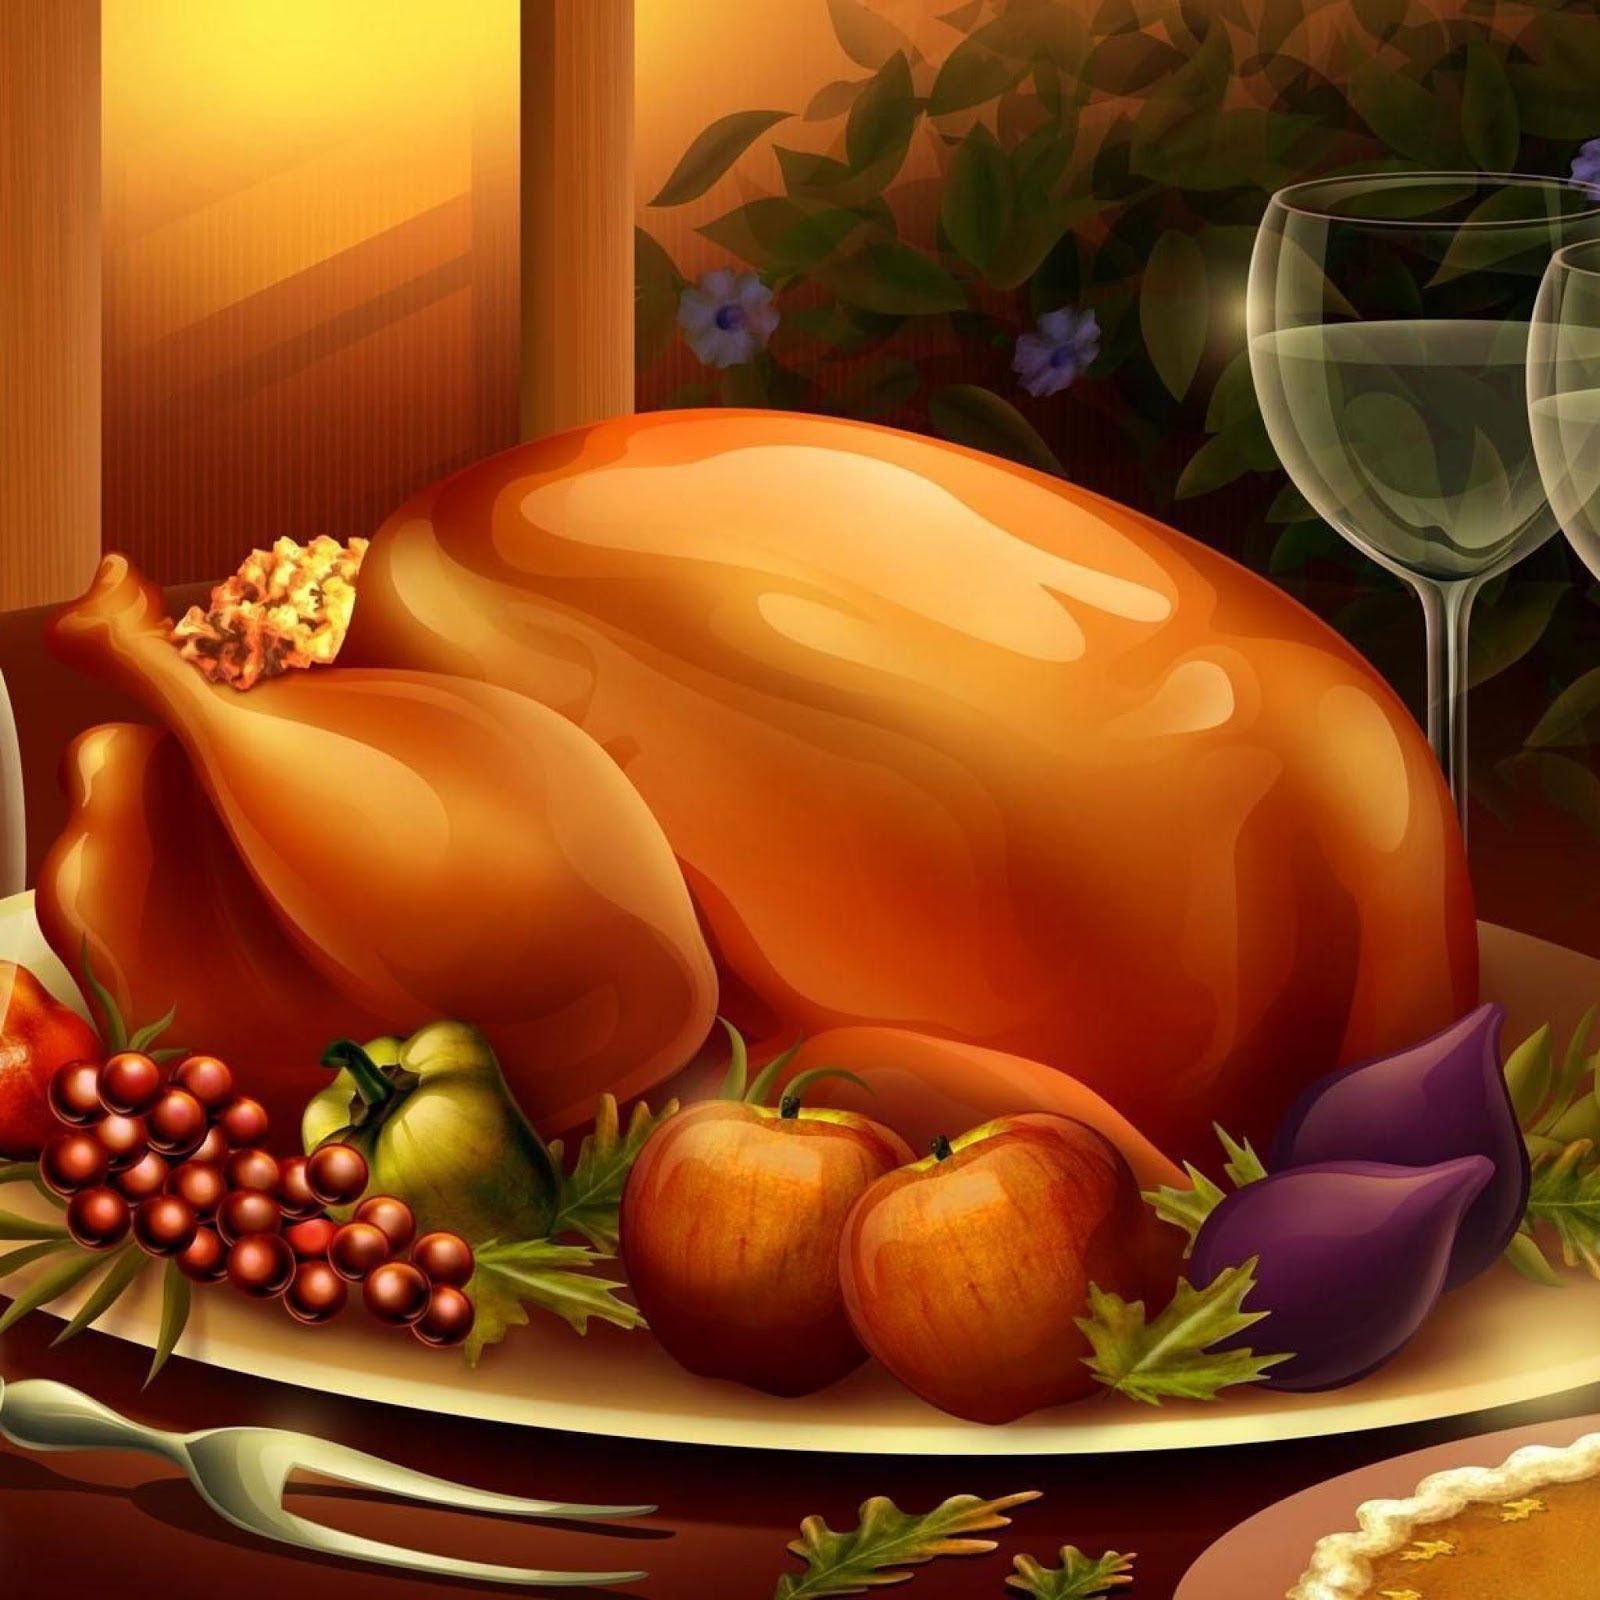 アンドロイド用の感謝祭の壁紙,静物,感謝祭のディナー,食物,感謝祭,七面鳥の肉